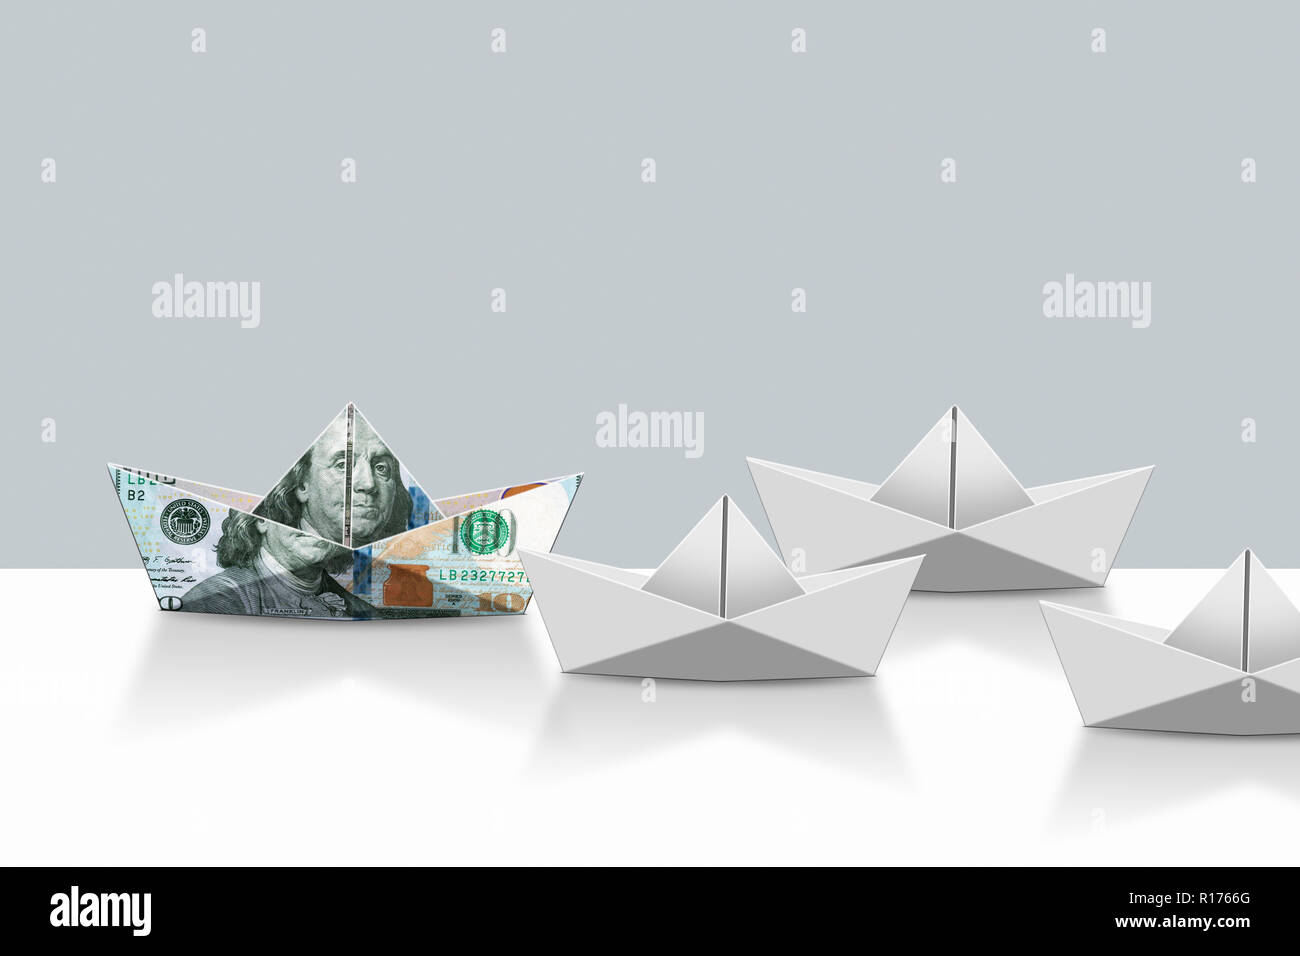 US dollar note papier ordinaire et bateaux origami, fond gris Banque D'Images